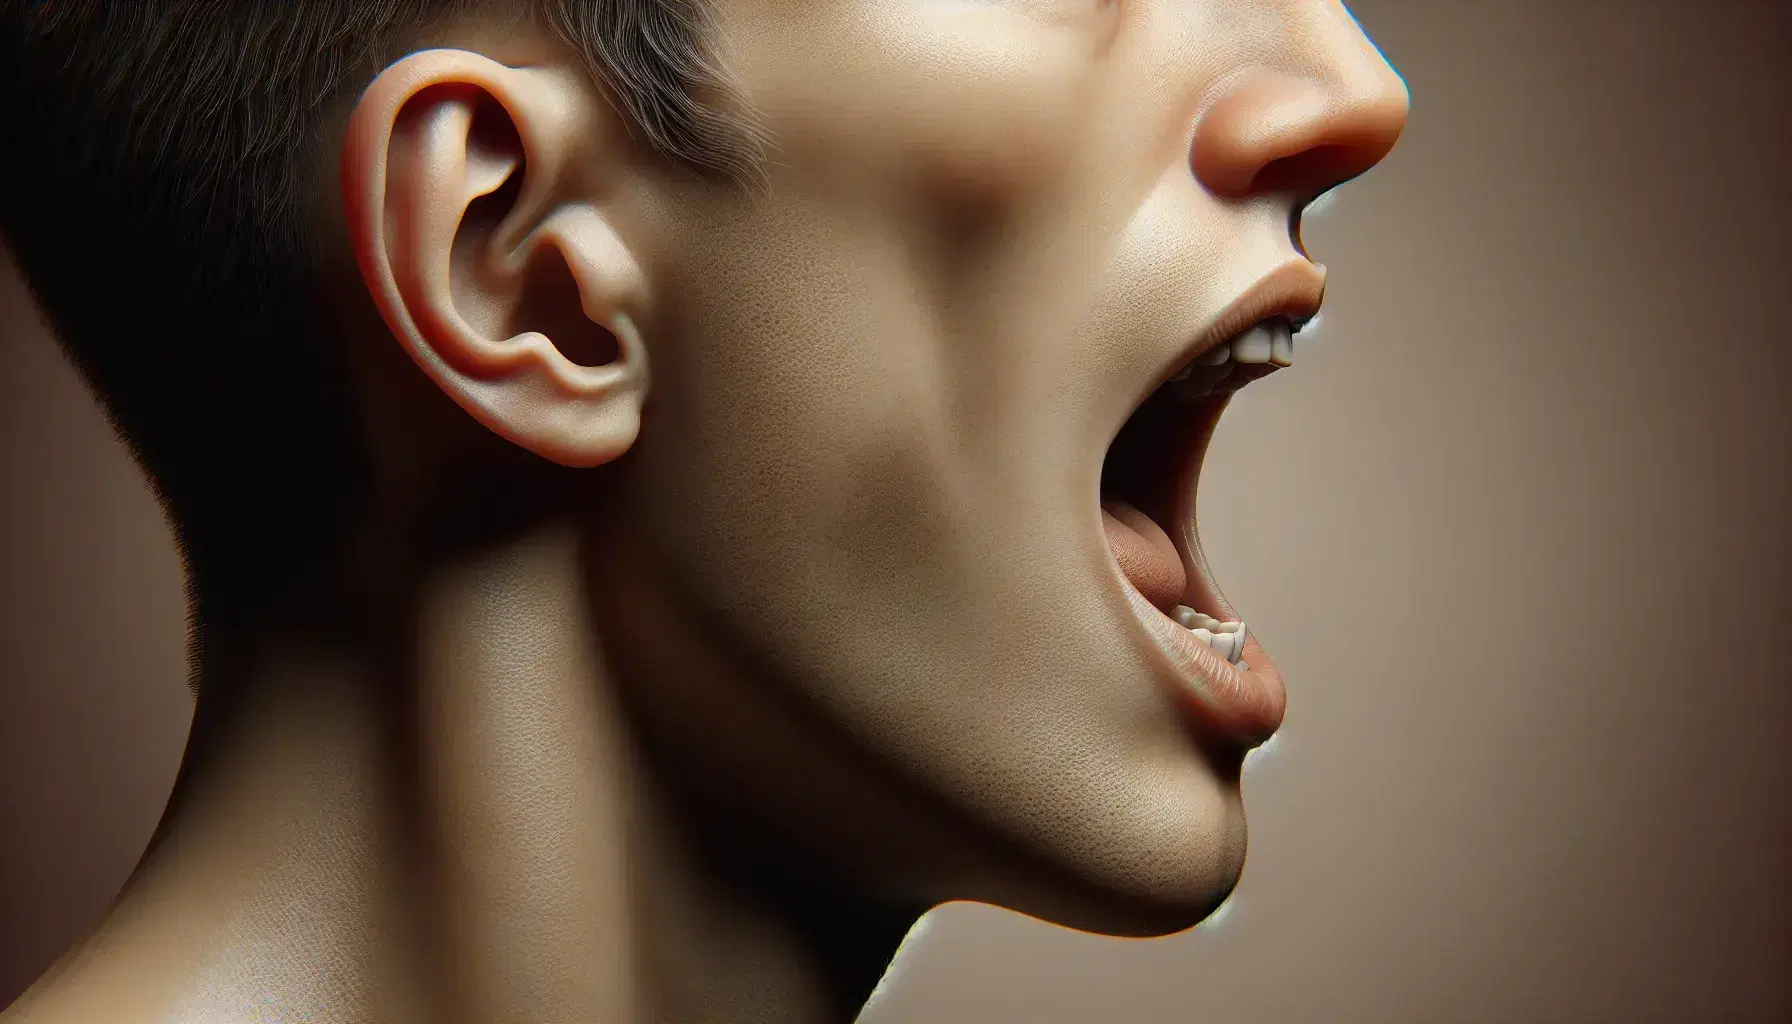 Perfil humano enfocado en boca entreabierta con dientes visibles y oreja, sobre fondo neutro.